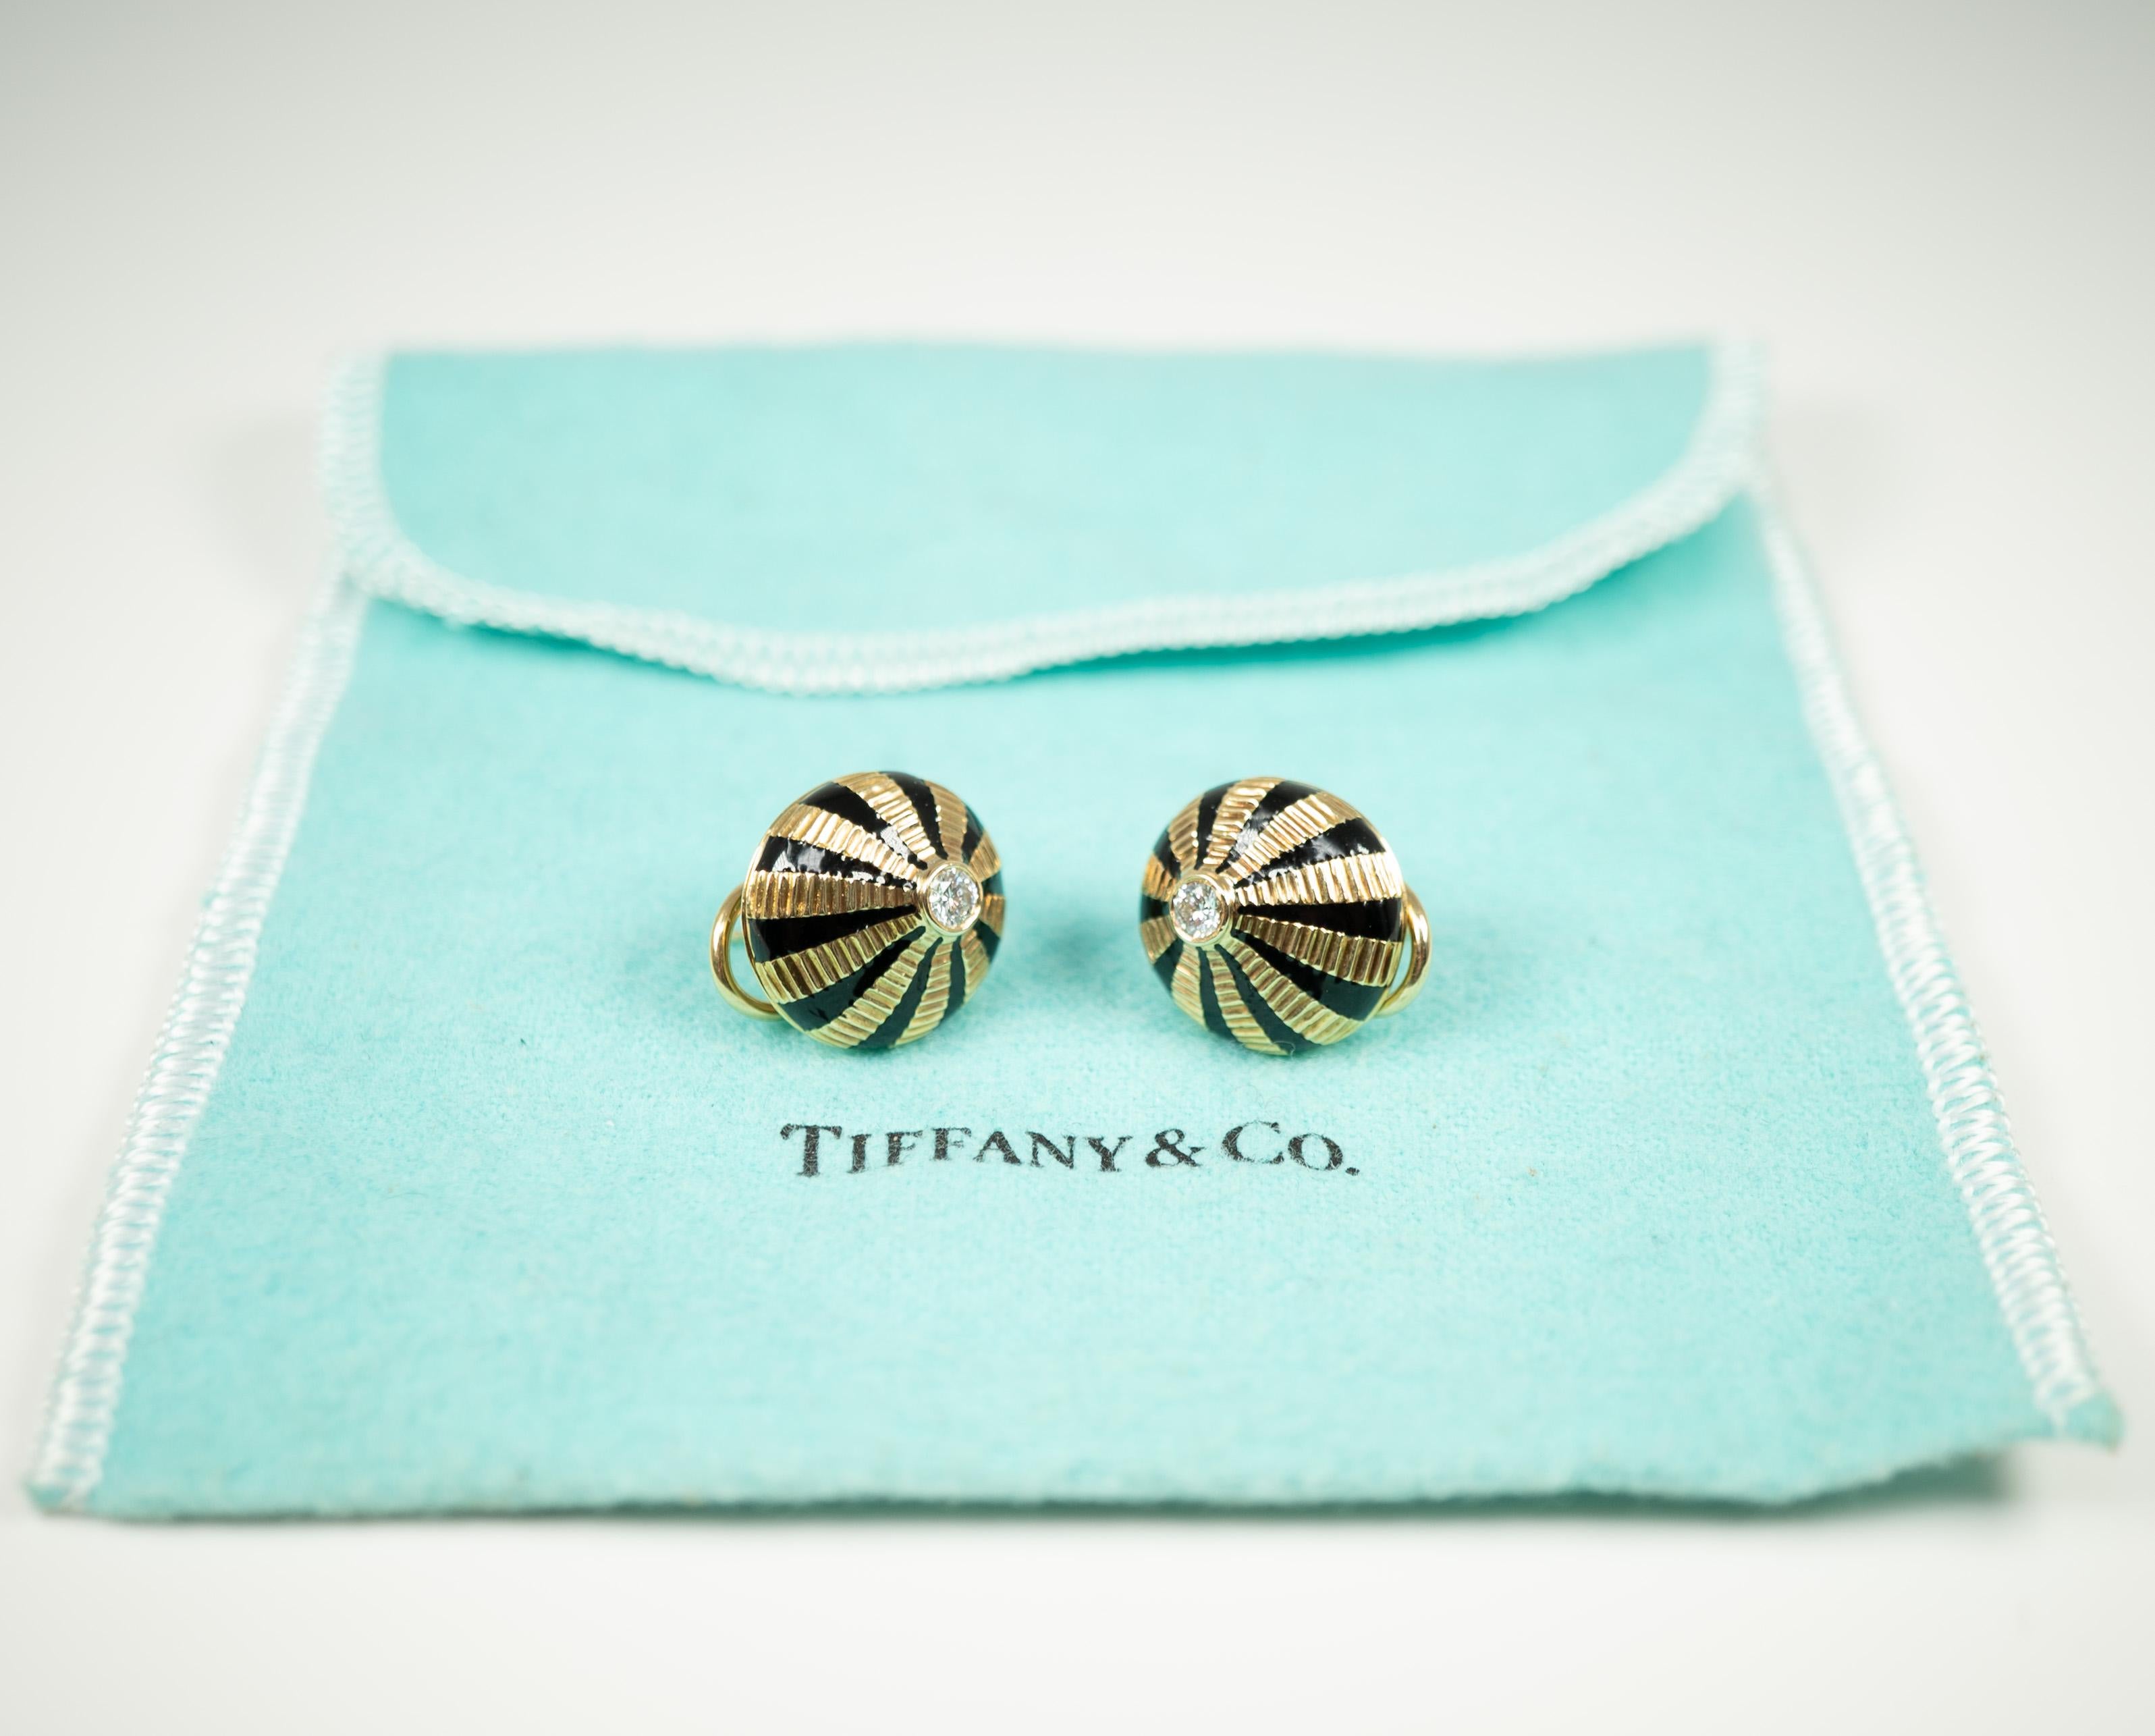 Taj Mahal Black Enamel Diamond Earrings by Jean Schlumberger for Tiffany & Co.  1